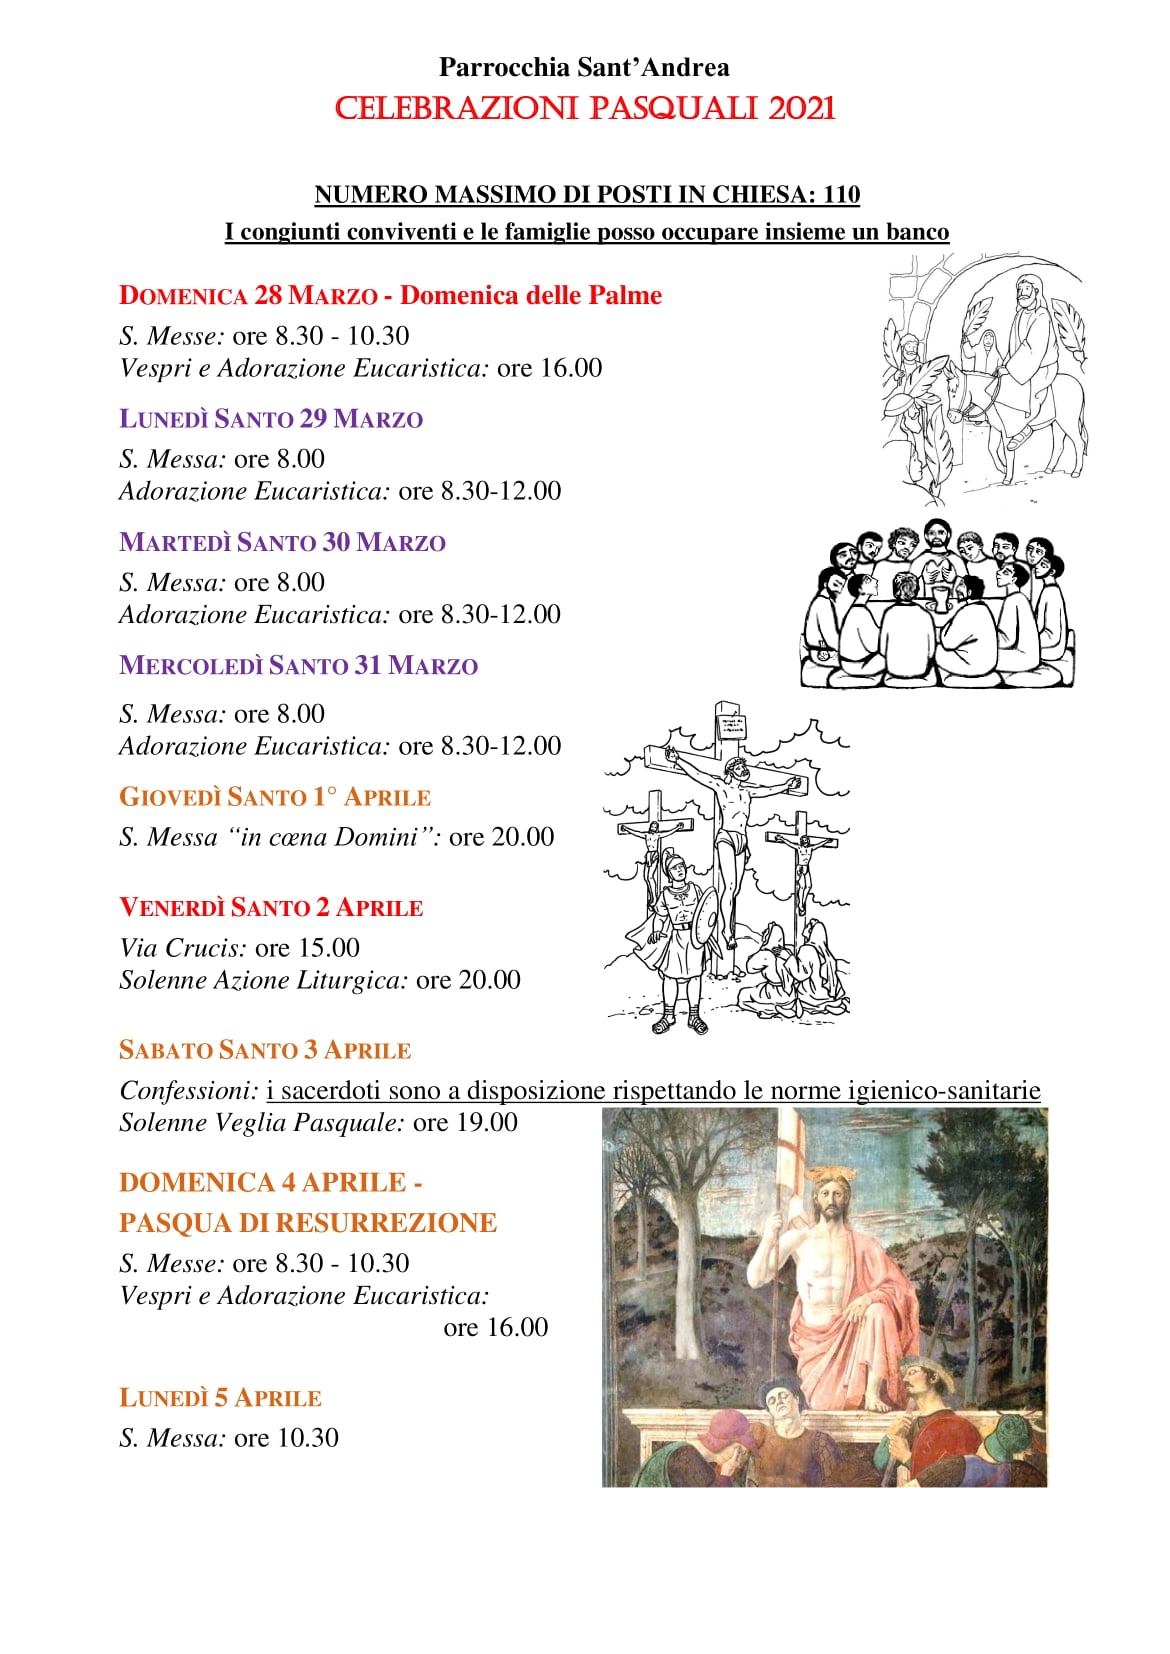 Calendario celebrazioni pasquali Sant’Andrea 2021